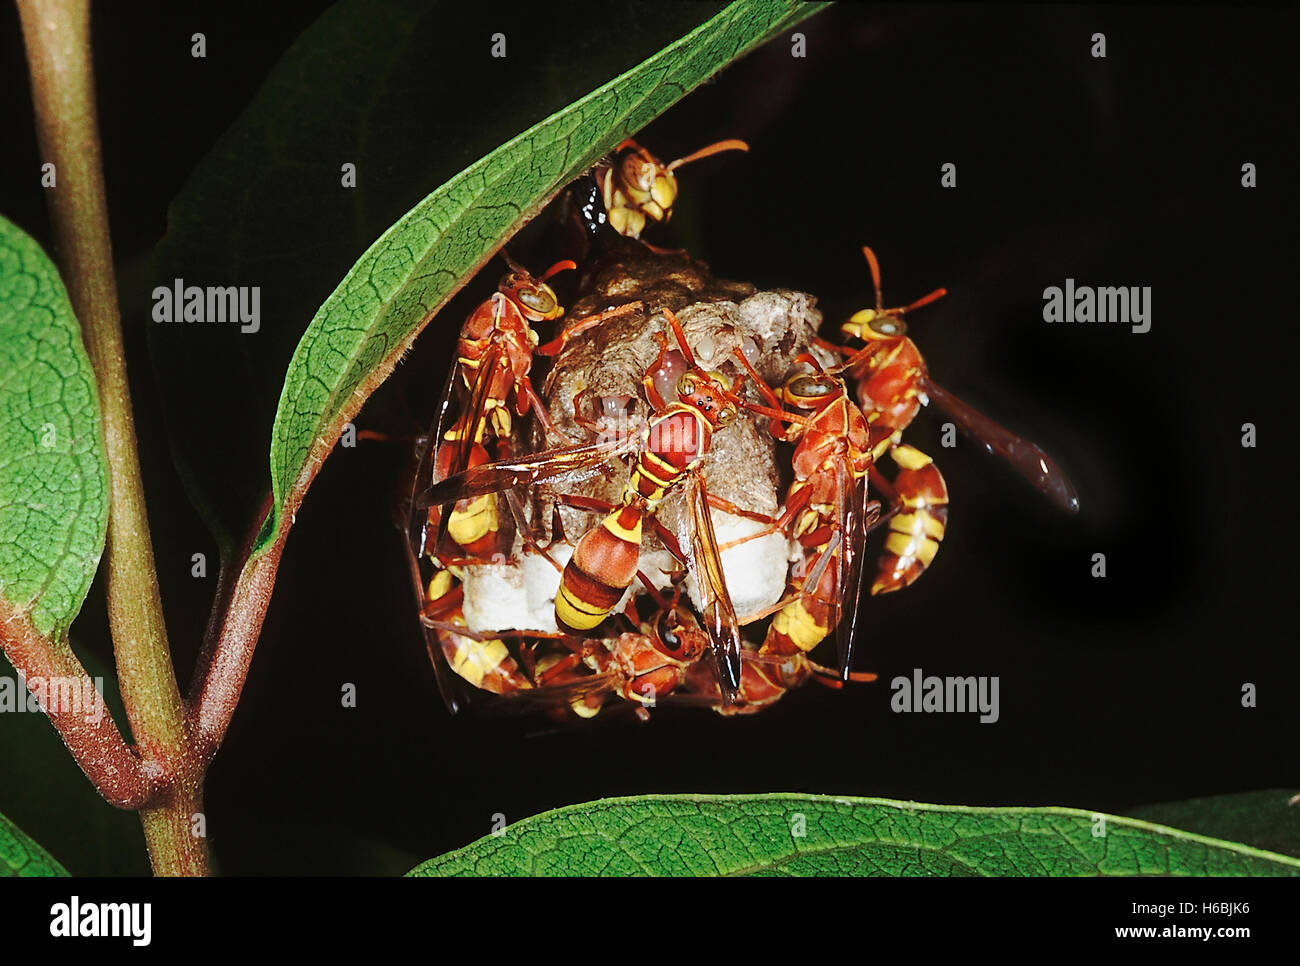 Les frelons sur nid. famille : arthropode. Les frelons sont des insectes sociaux qui vivent ensemble dans une colonie. Le nid est fait d'un papier Banque D'Images